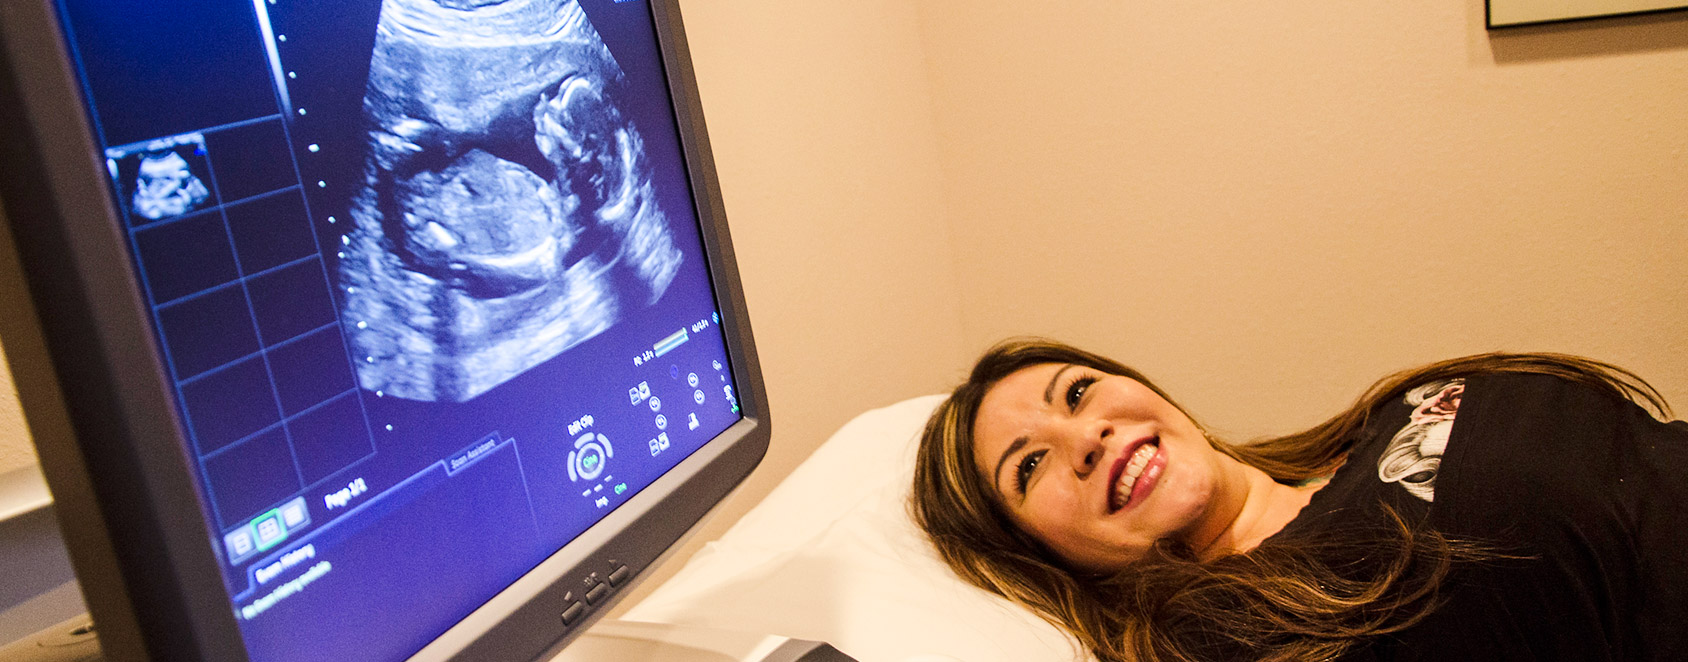 Una madre emocionada por ver una ecografía de su bebé.